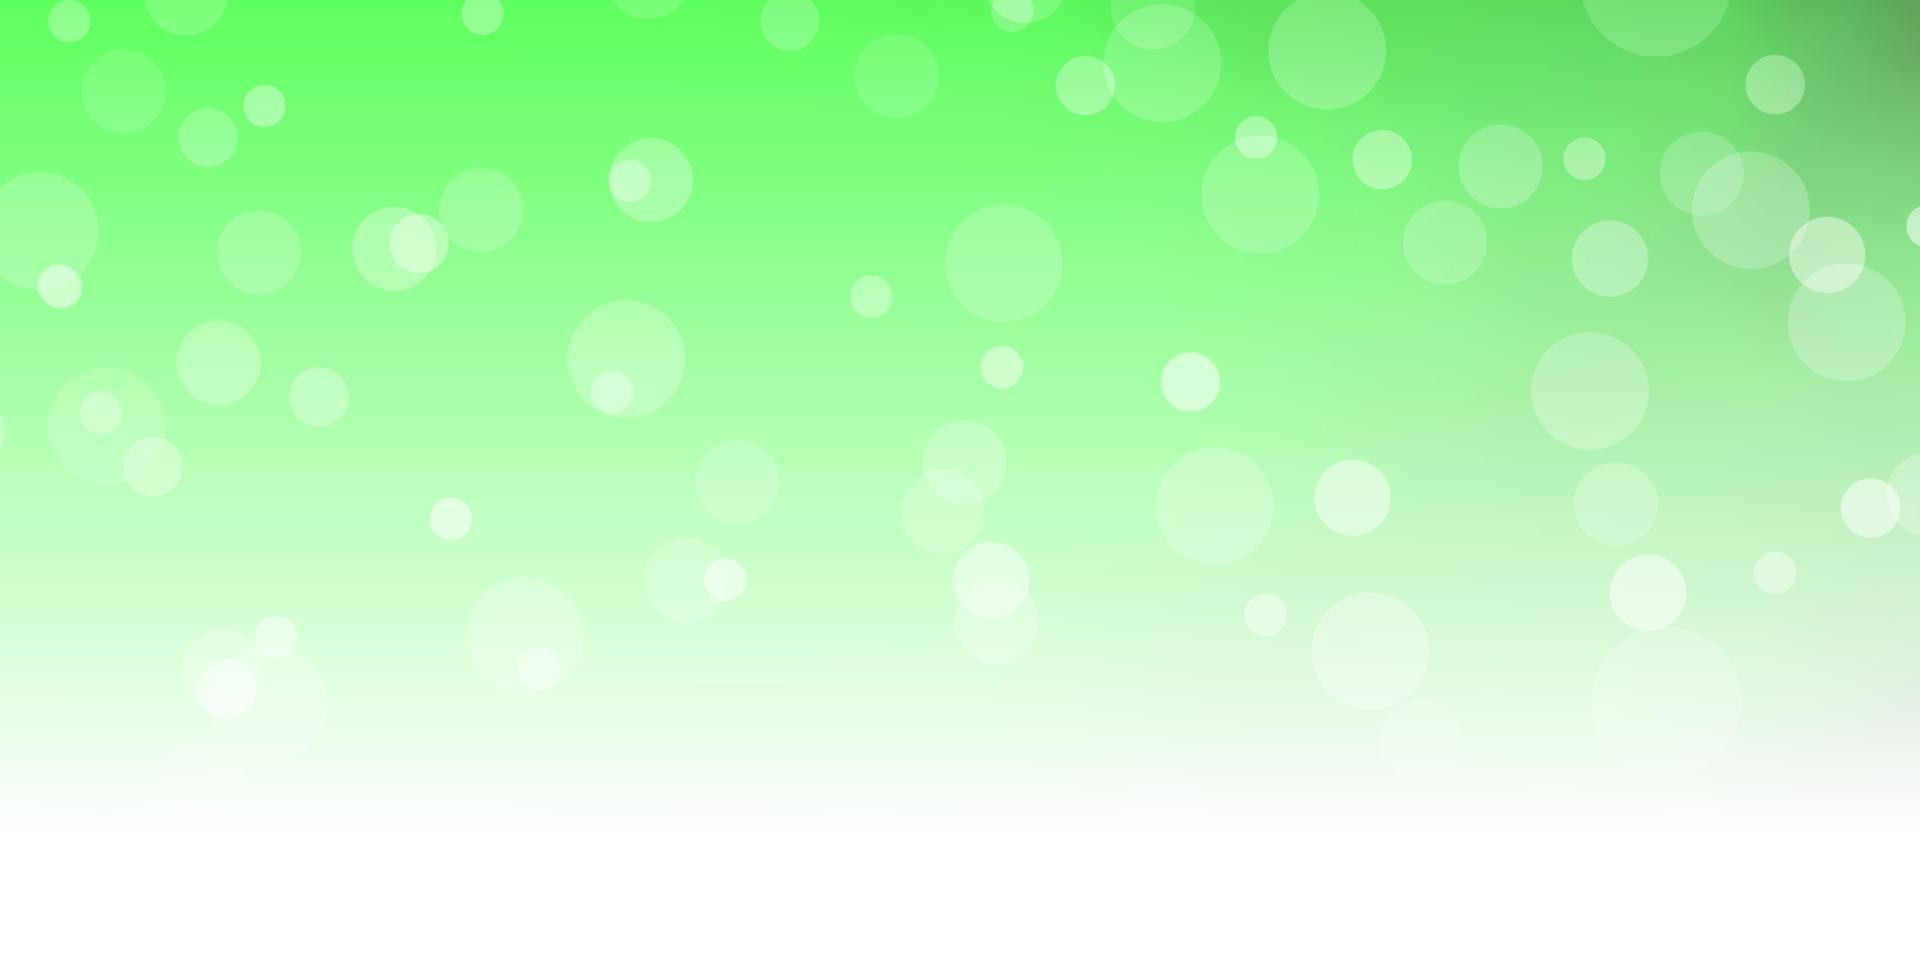 diseño de vector verde claro con círculos.